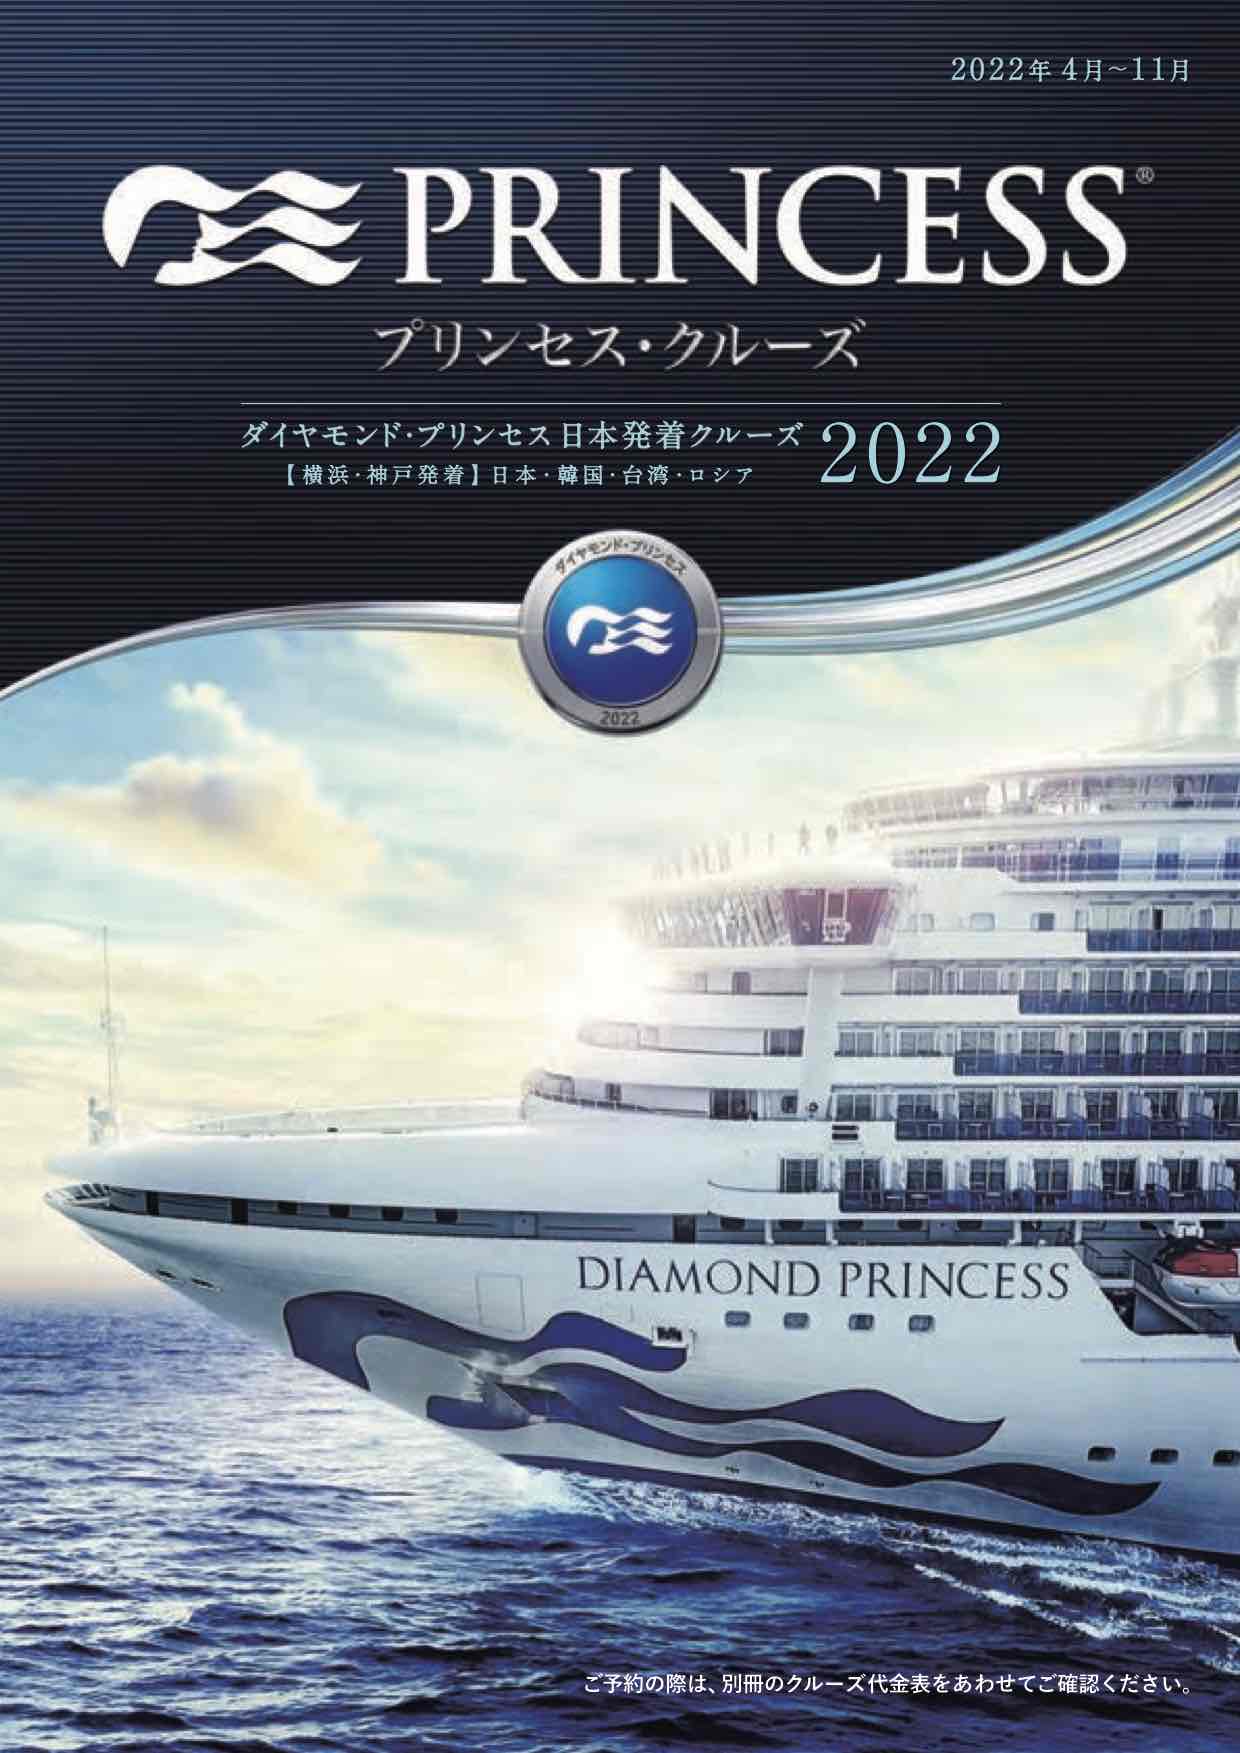 2022年日本発着パンフレットを見る
